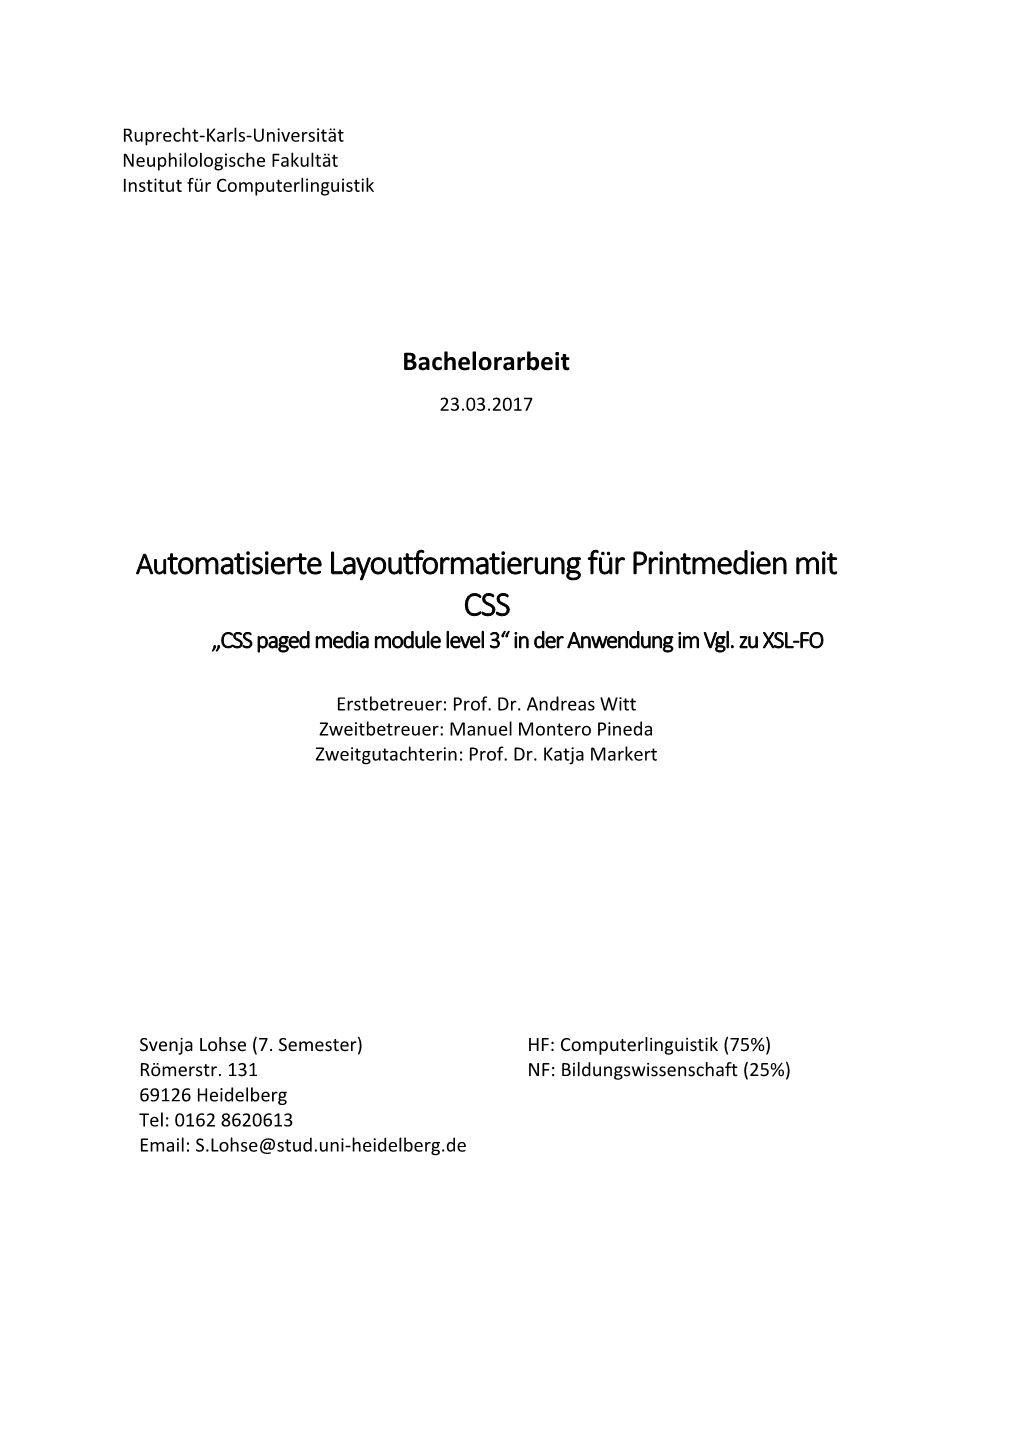 Automatisierte Layoutformatierung Für Printmedien Mit CSS (PDF)